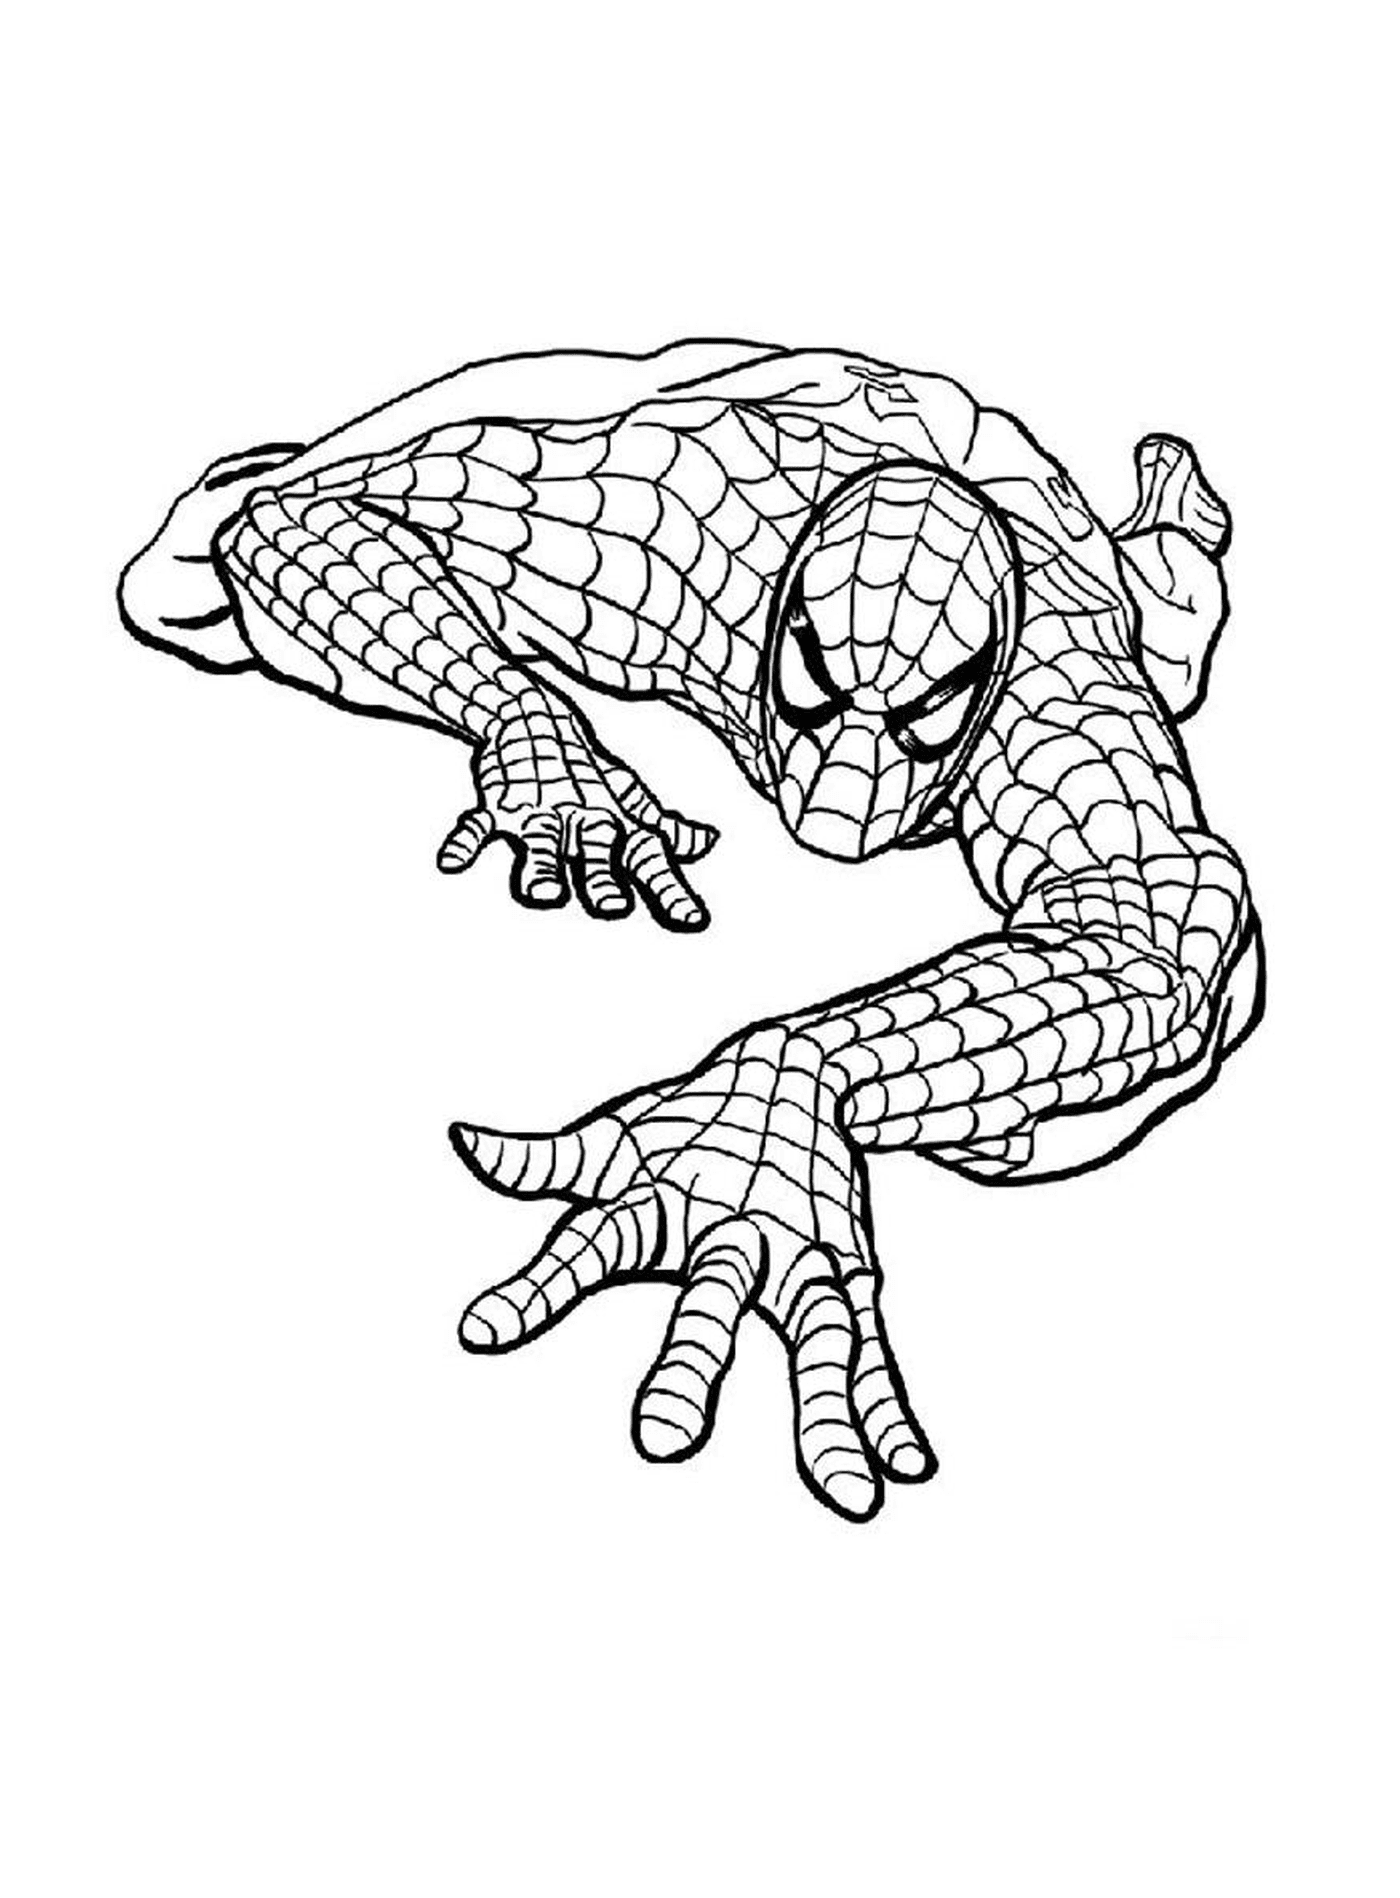   Spiderman représenté en dessin 